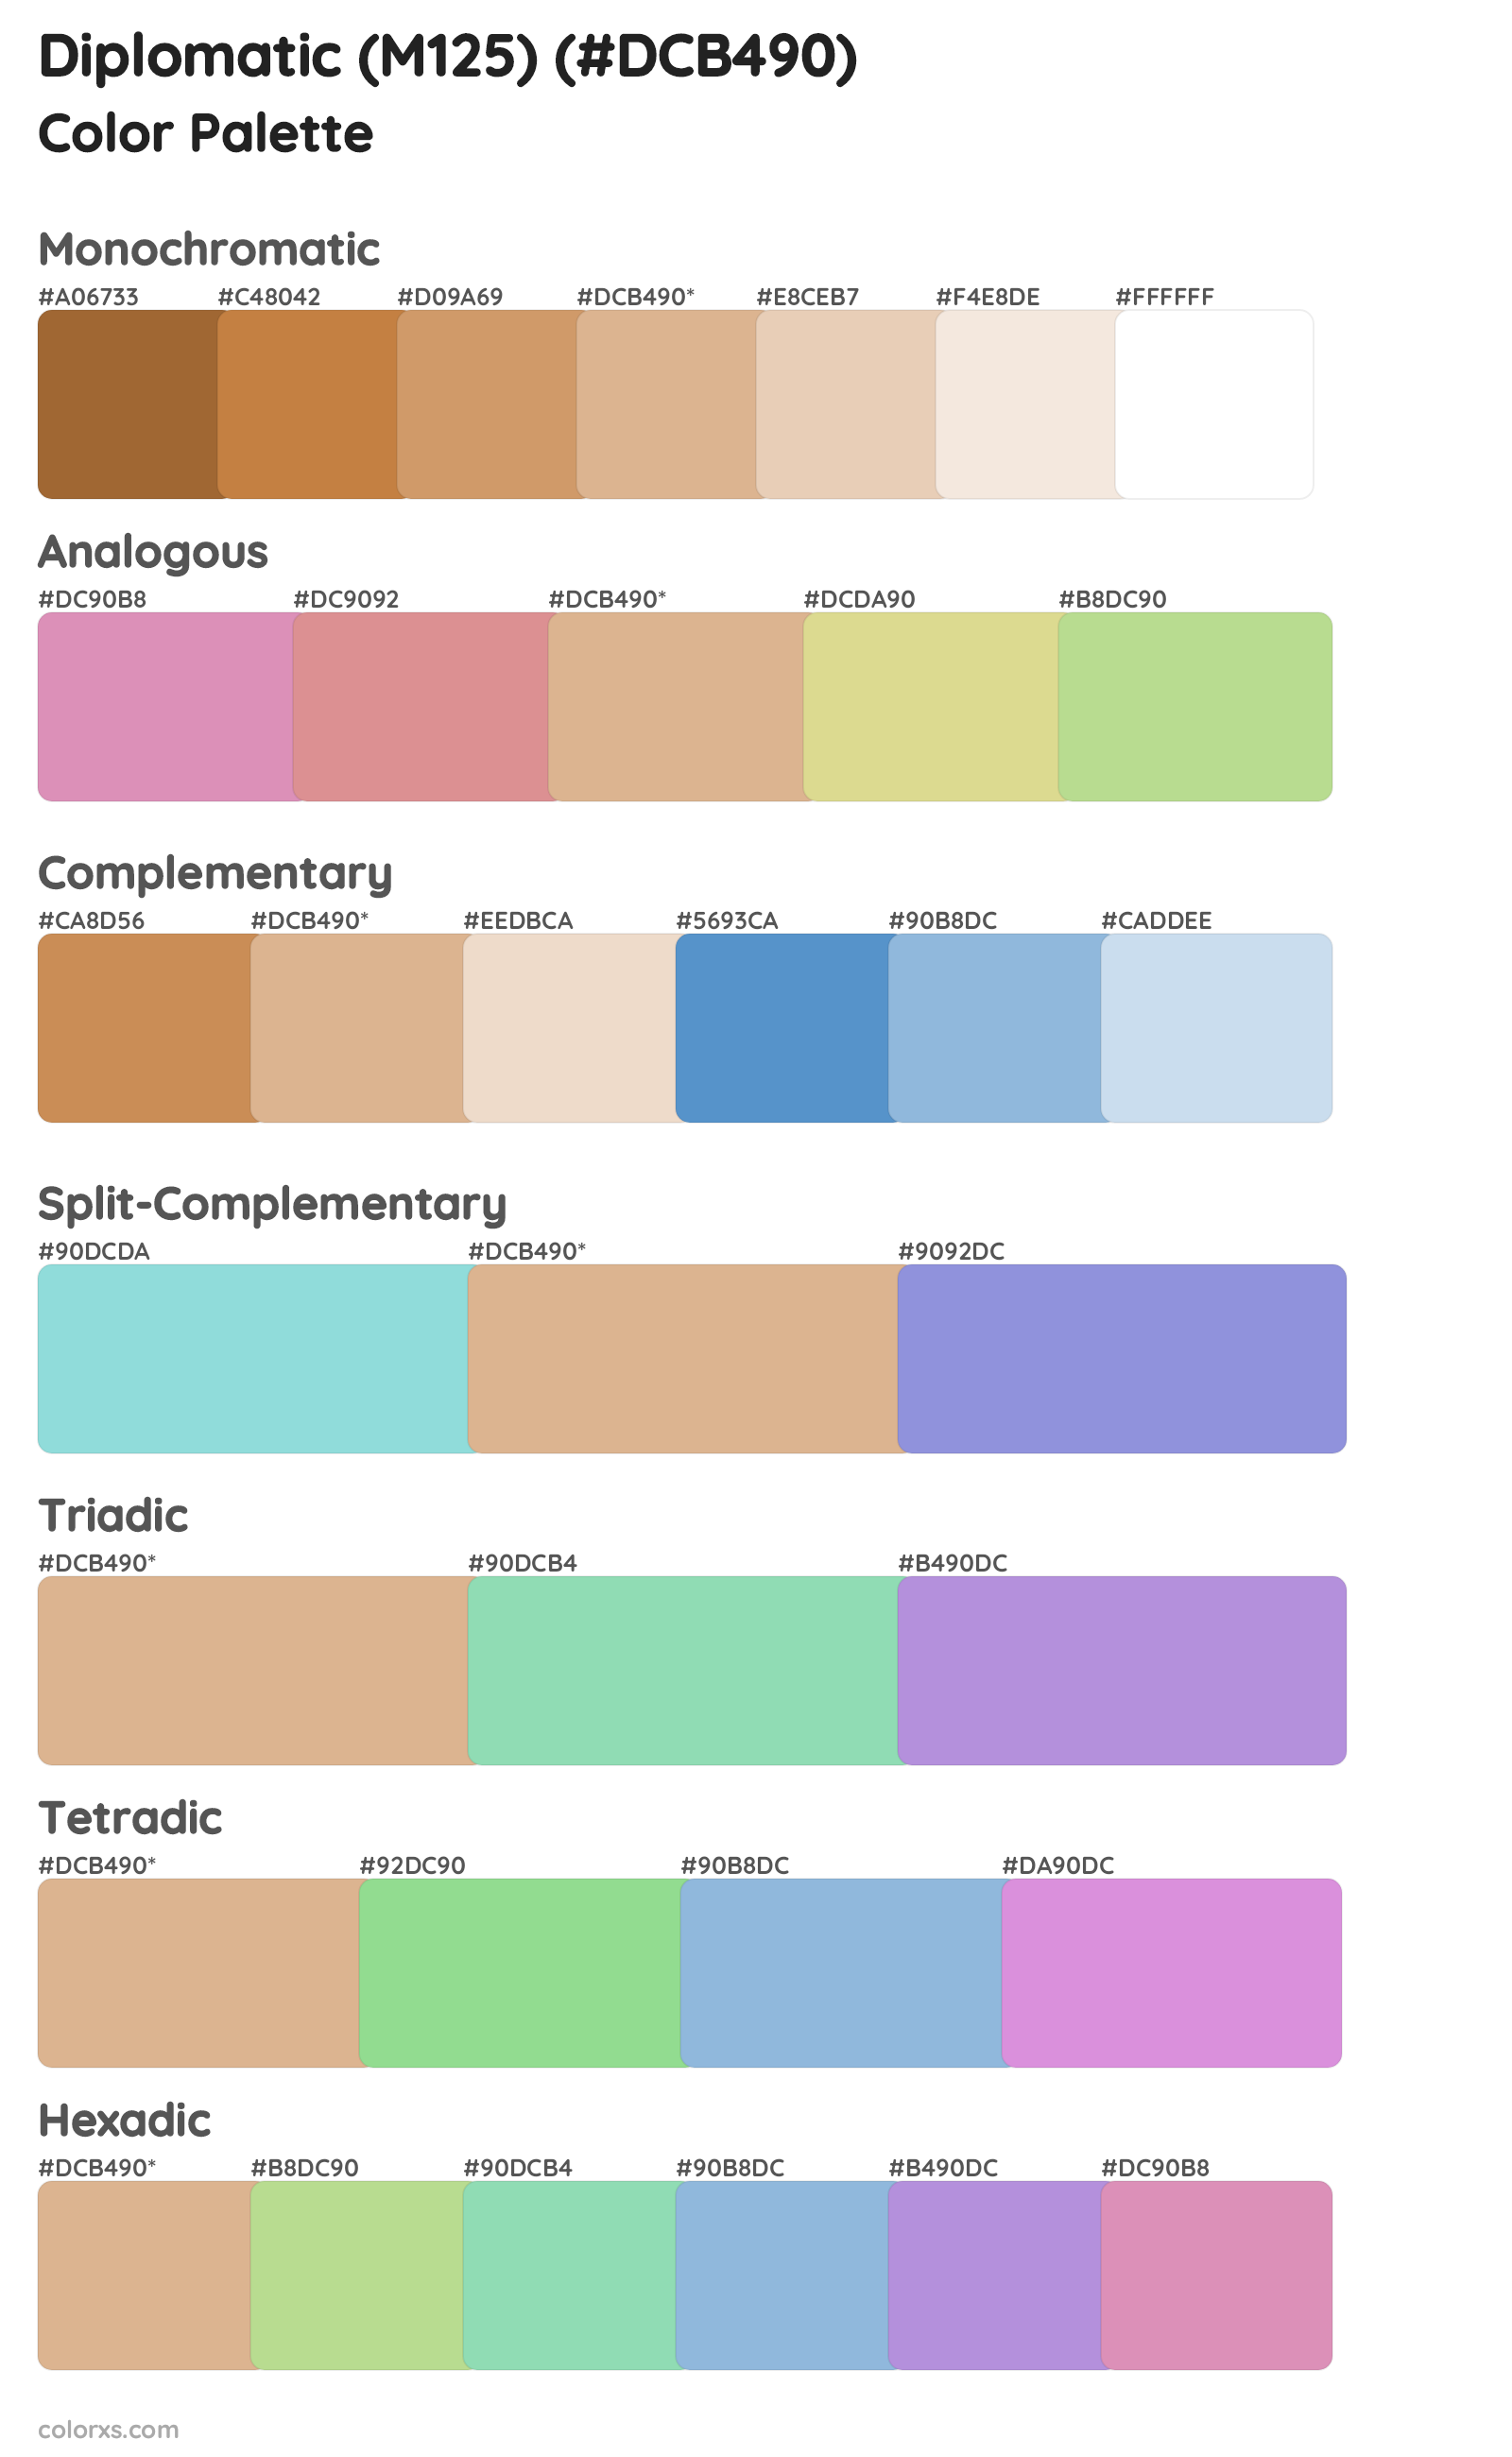 Diplomatic (M125) Color Scheme Palettes